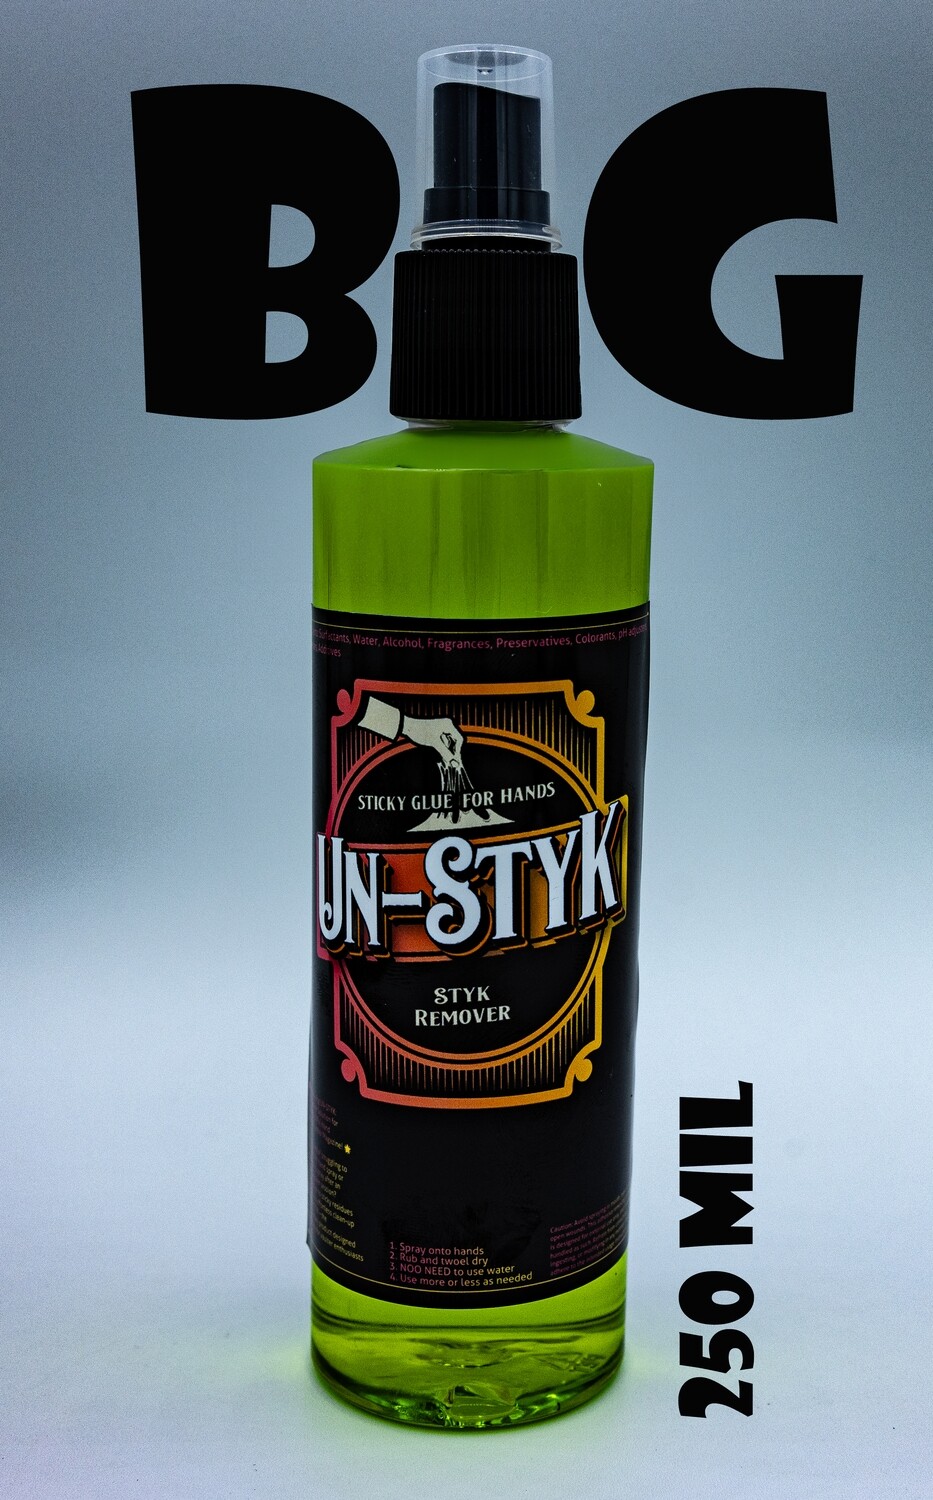 UN-STYK BIG BOTTLE by Vaulter Magazine 250 ml Spray